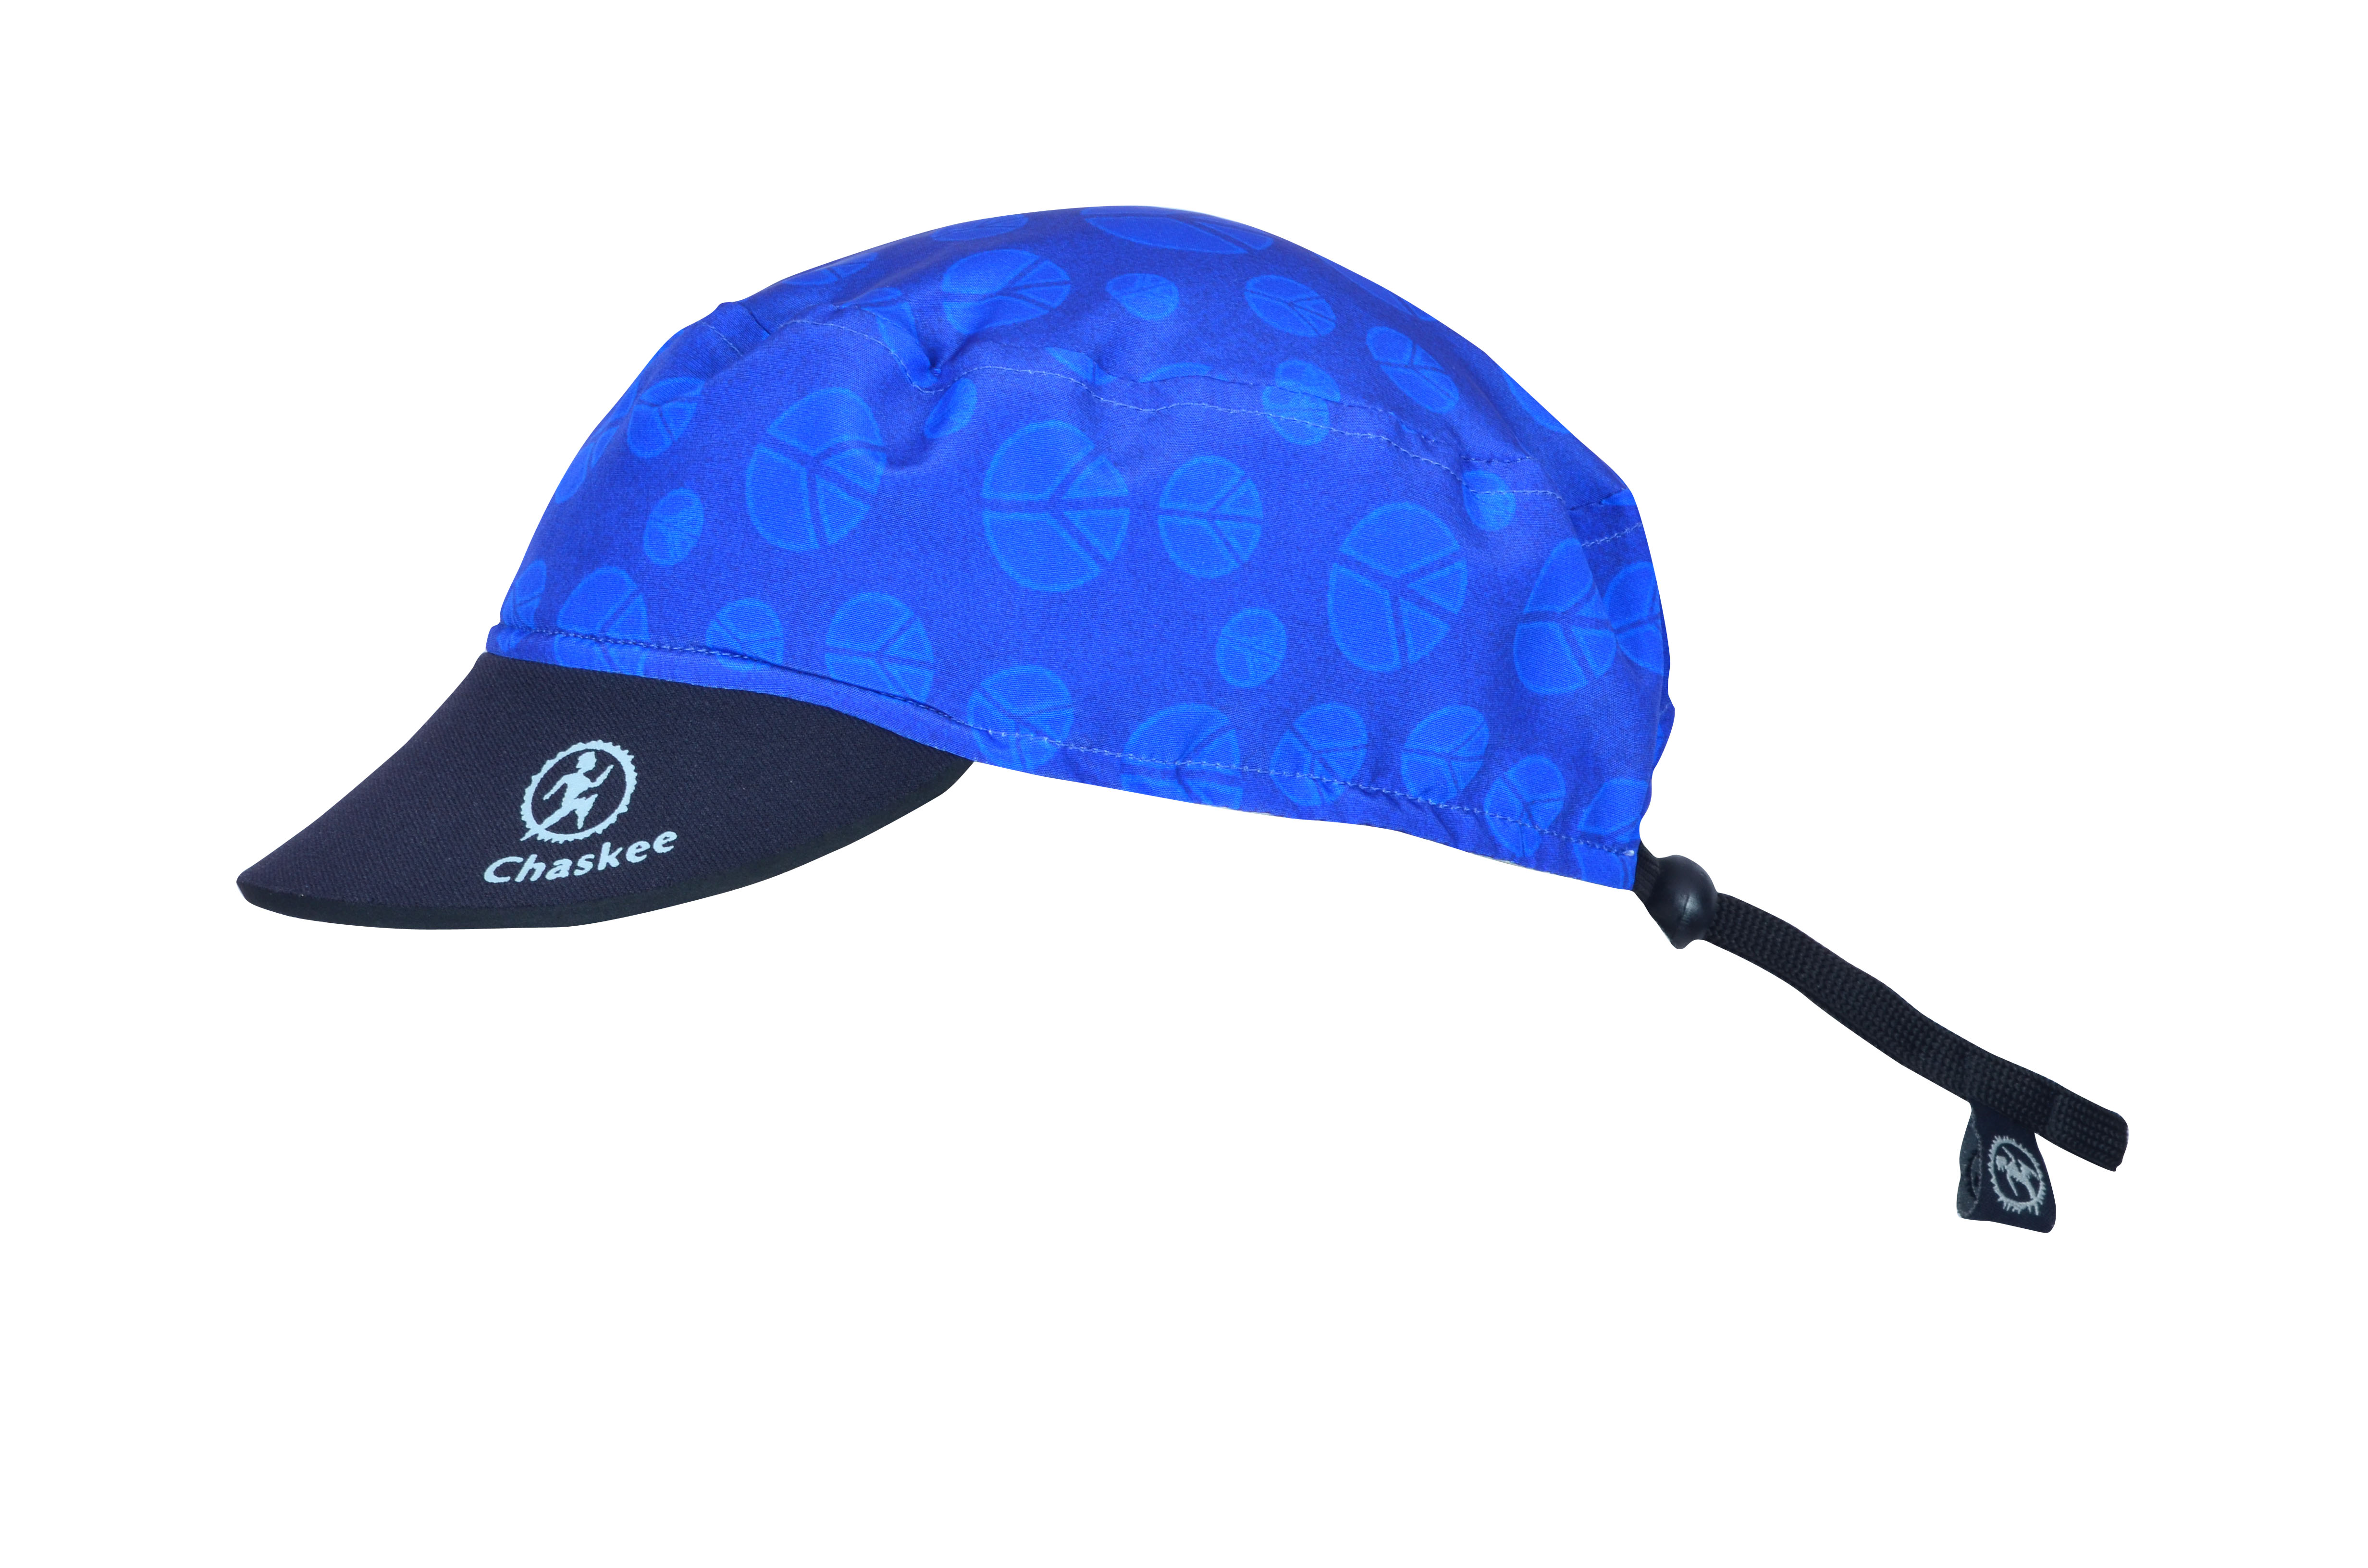 Azul Azul Cobalto Chaskee Reversible Cap Cashmere con Cartel de Neopreno Reversible Gorro, UV 80